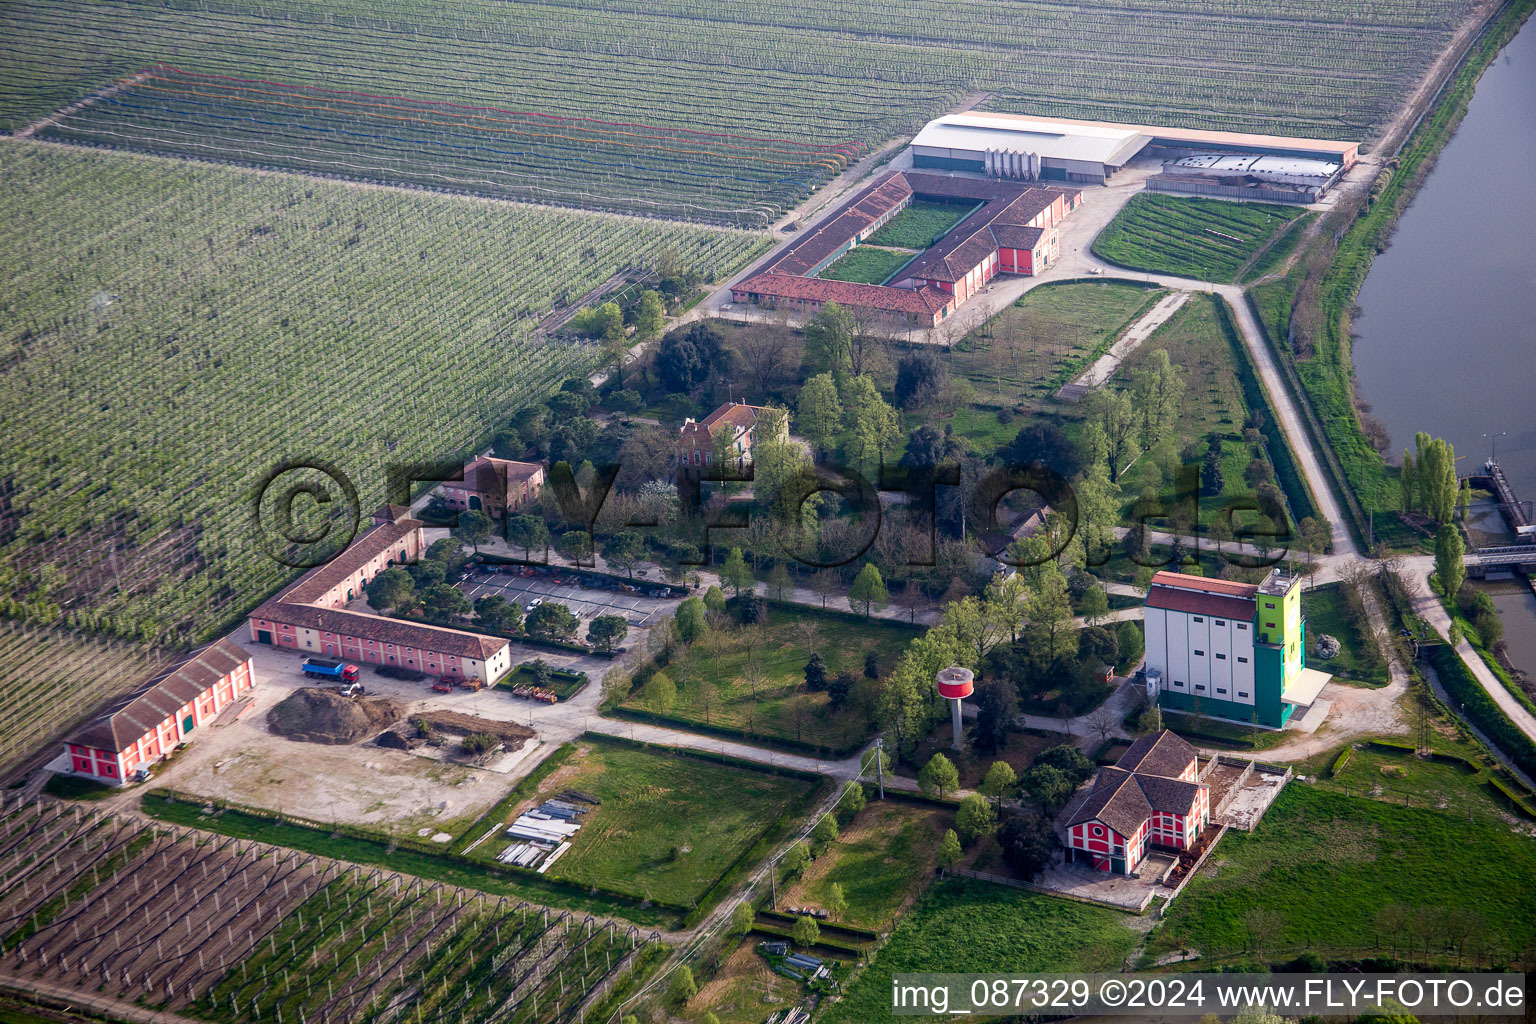 Gehöft eines Bauernhofes in der Po-Ebene am Rand von bestellten Feldern in Lodigiana in Emilia-Romagna, Italien